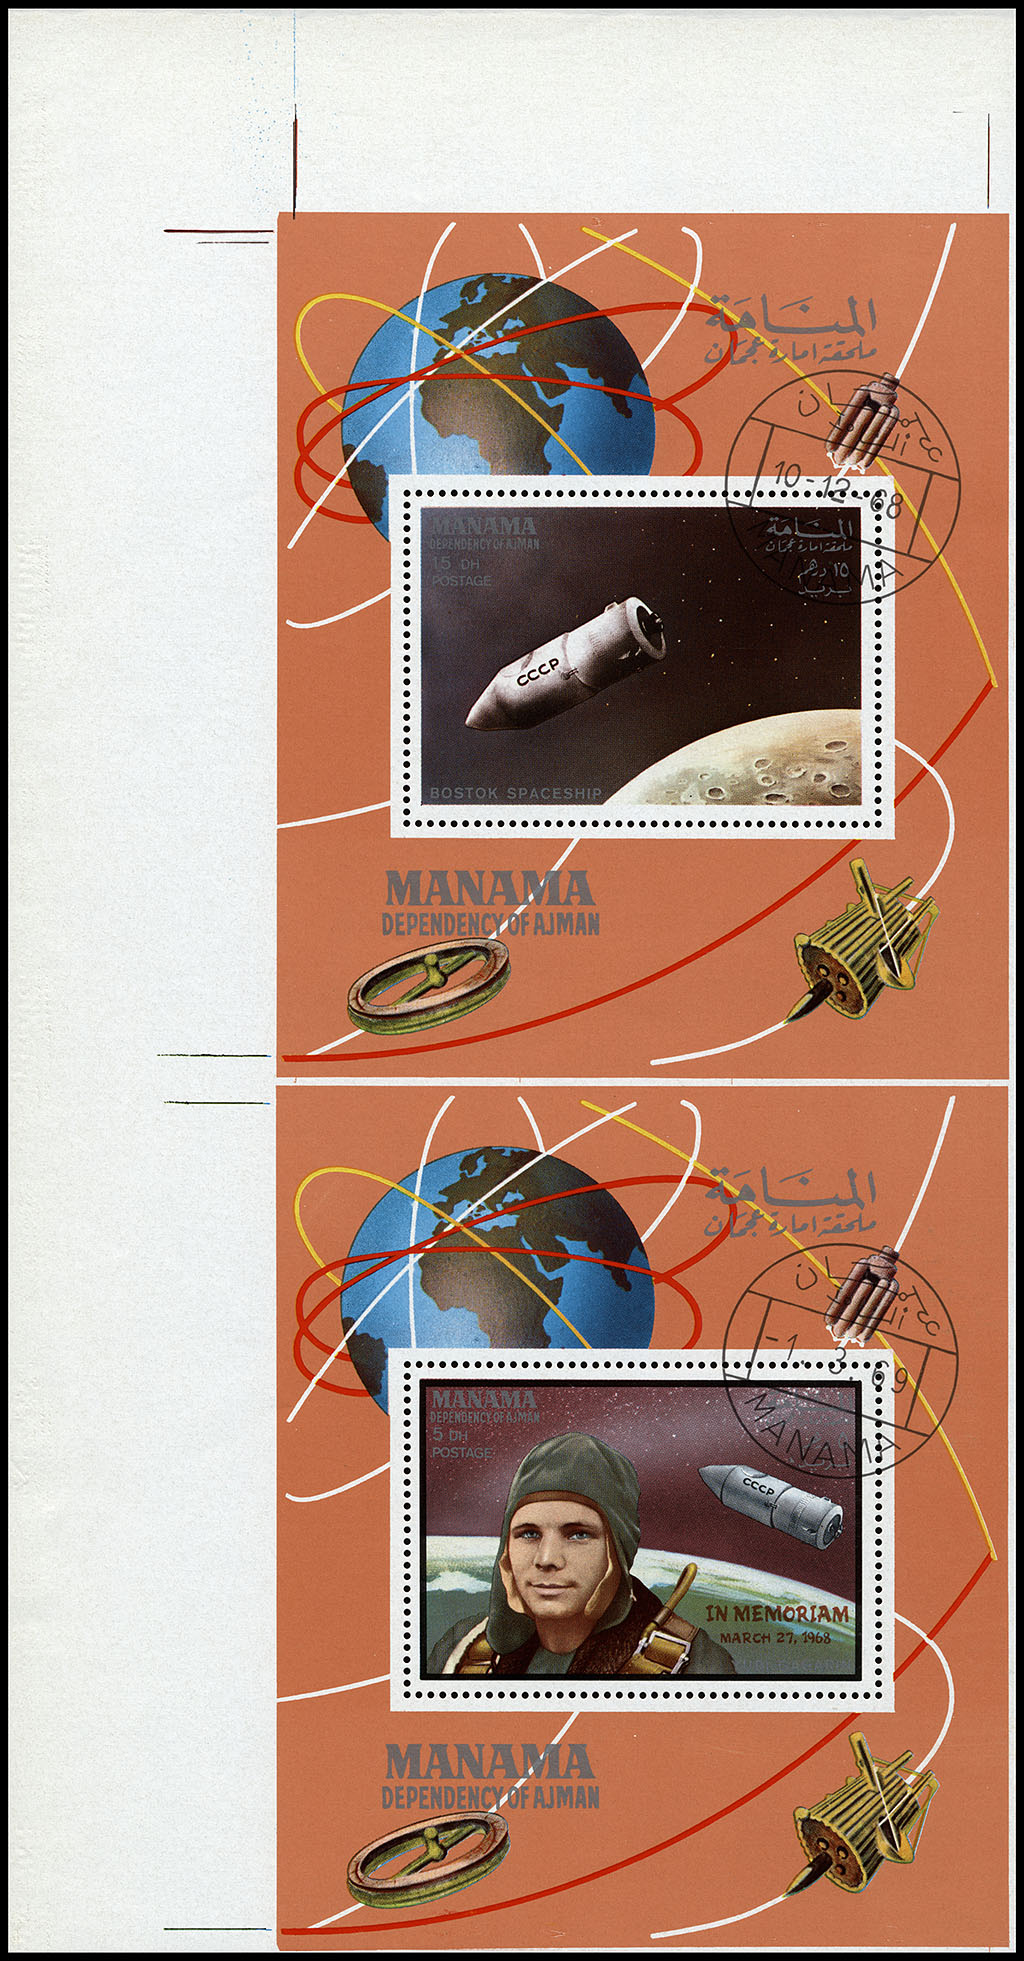 http://www.fandom.ru/about_fan/stamps/manama_1969_space_mi_einzelblock_117a_mi_block_l35a_cto_trash_2.jpg